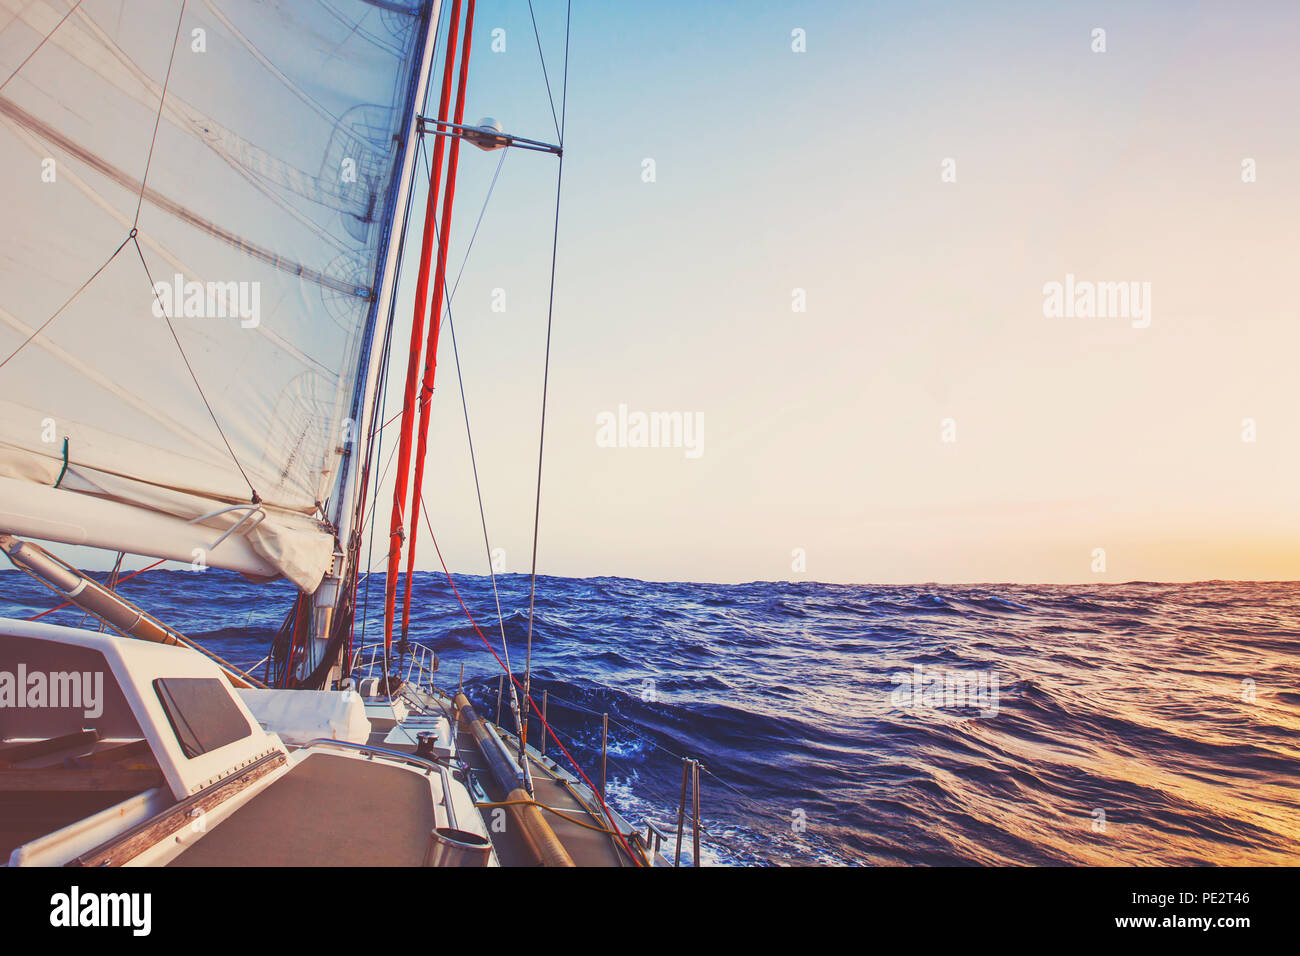 Romántico crucero a bordo del barco, yate de lujo sailling, hermoso fondo marino Foto de stock